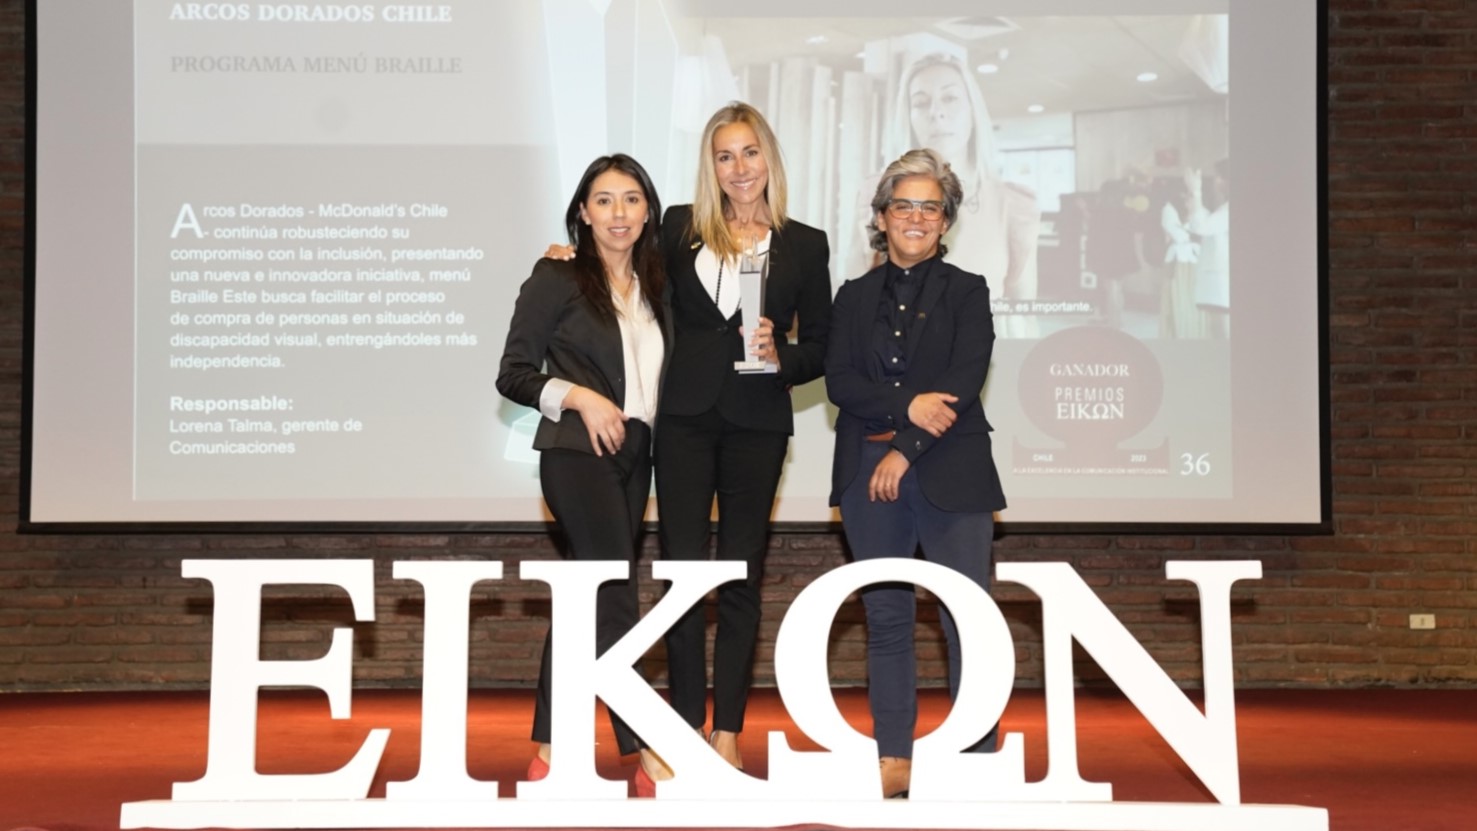 [Chile] Arcos Dorados recibió ocho premios EIKON y lidera como la compañía más premiada en Chile